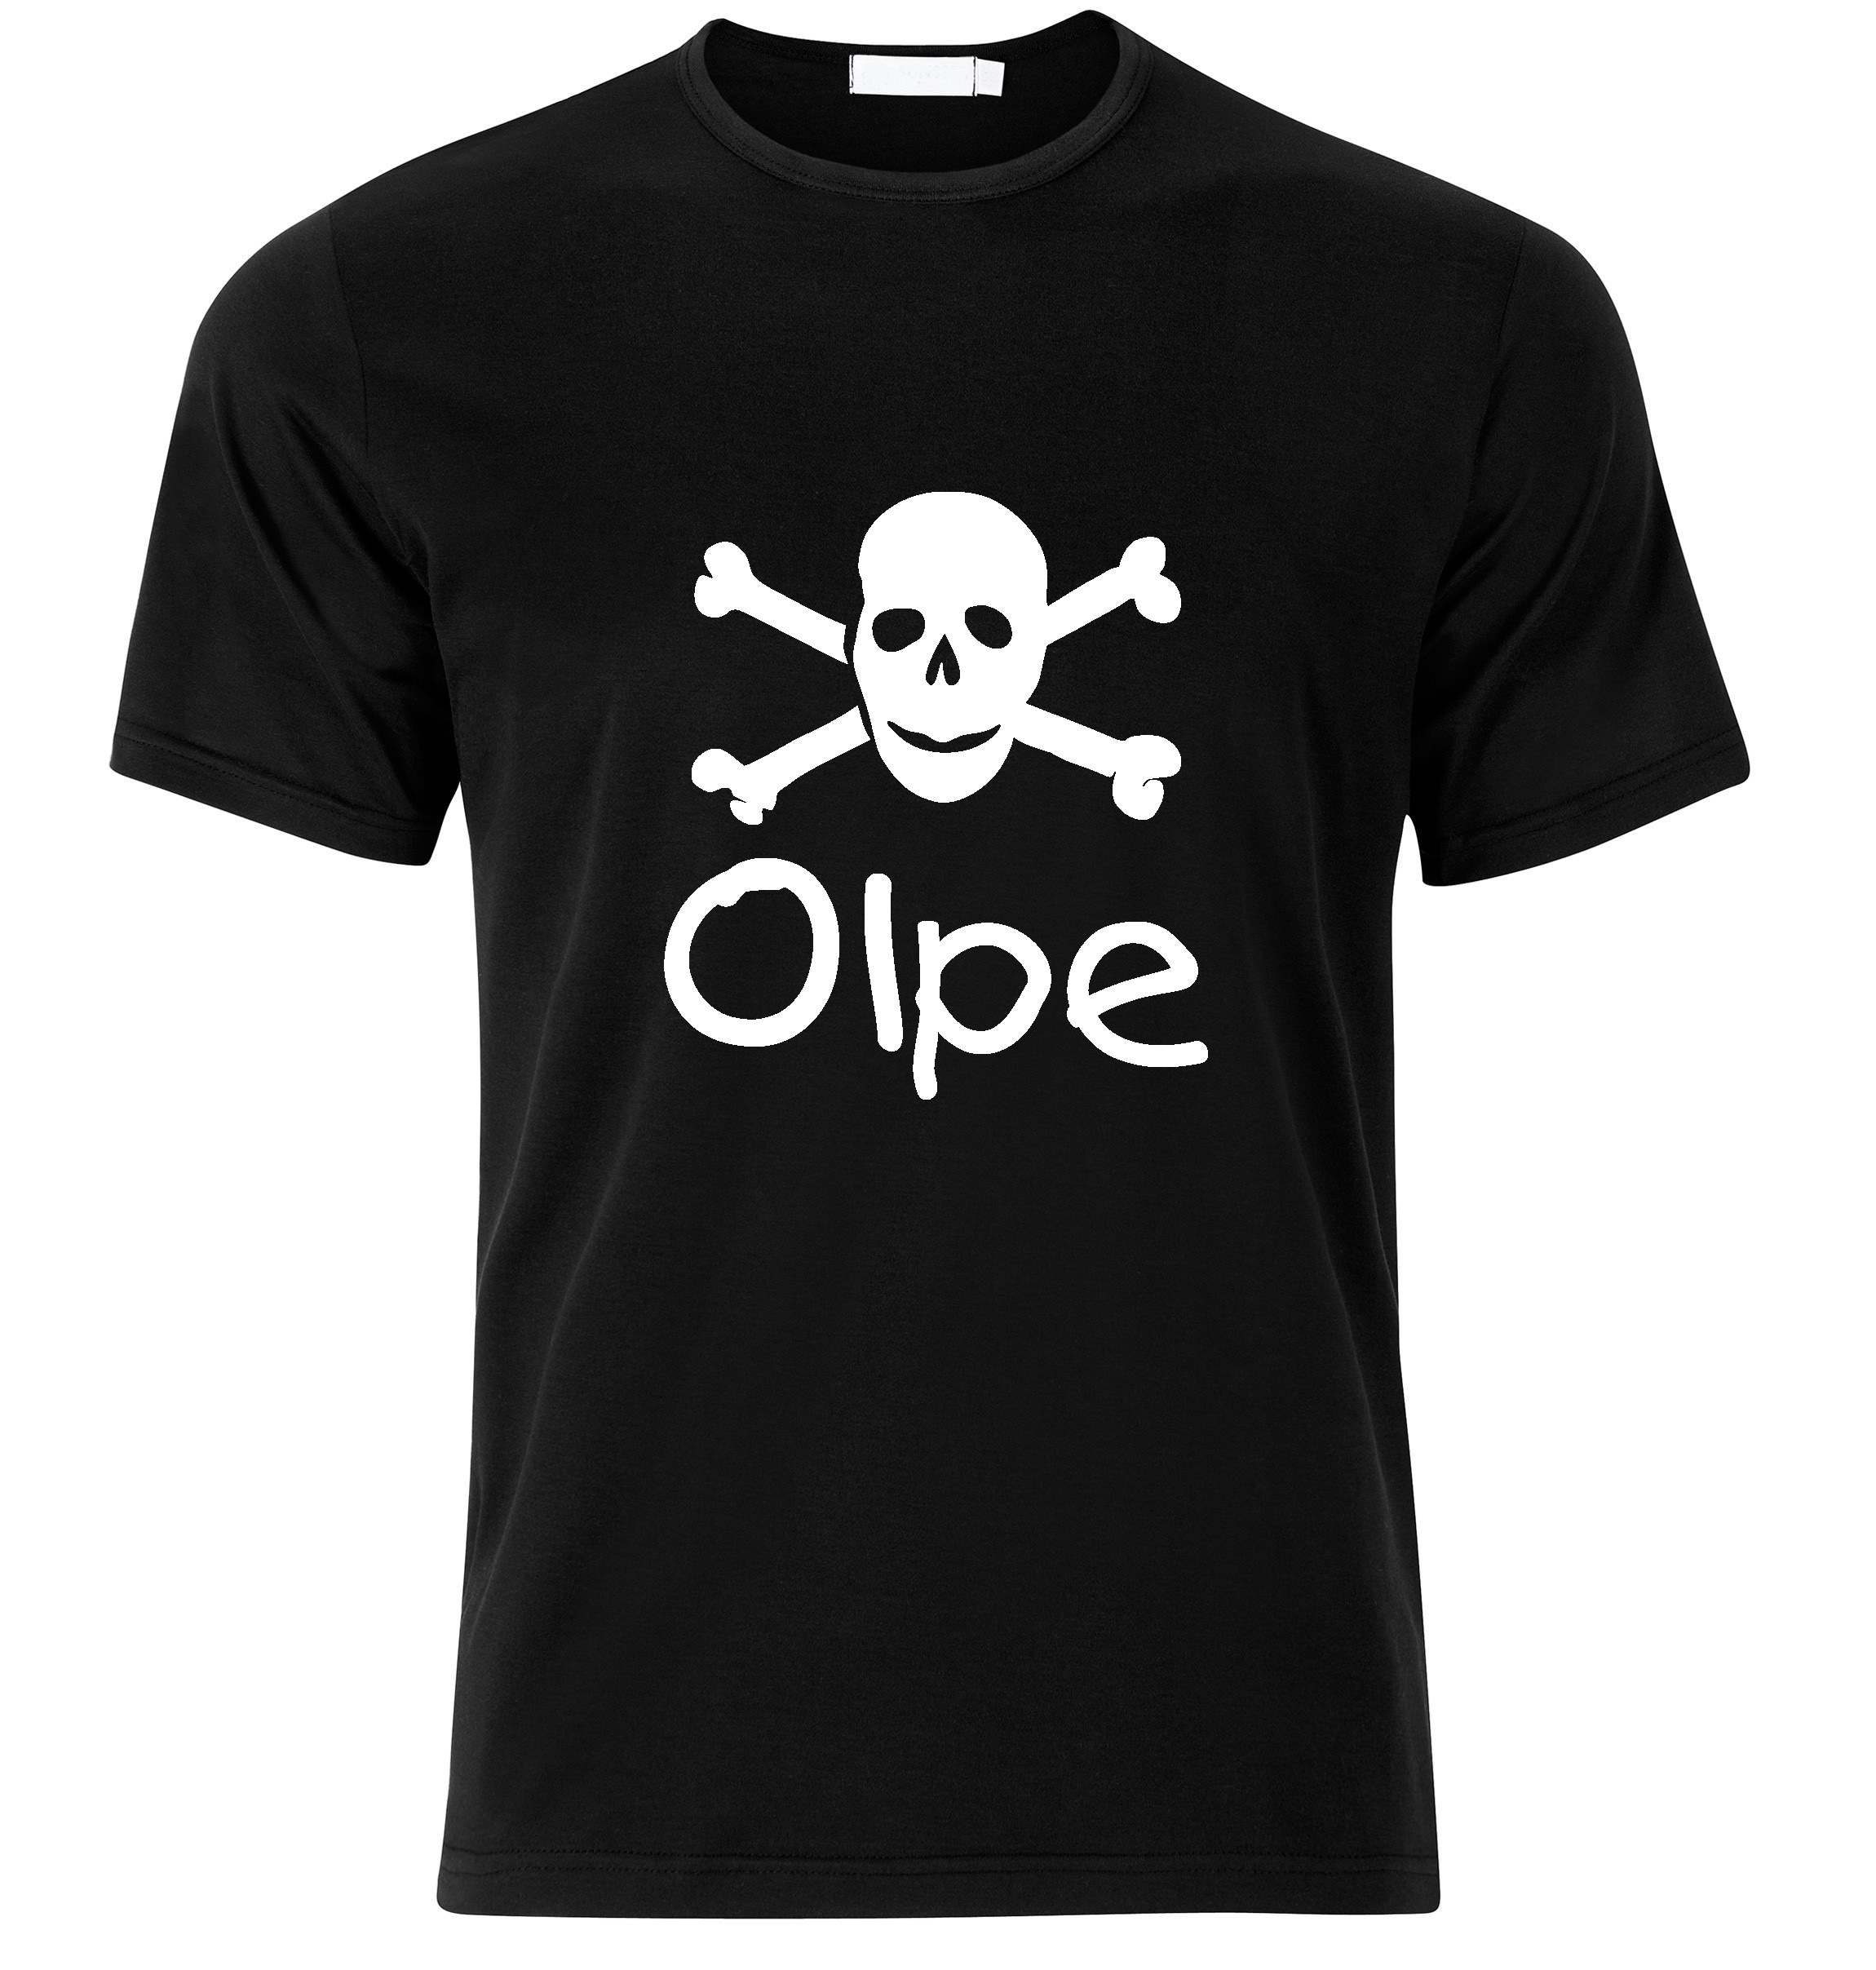 T-Shirt Olpe Jolly Roger, Totenkopf